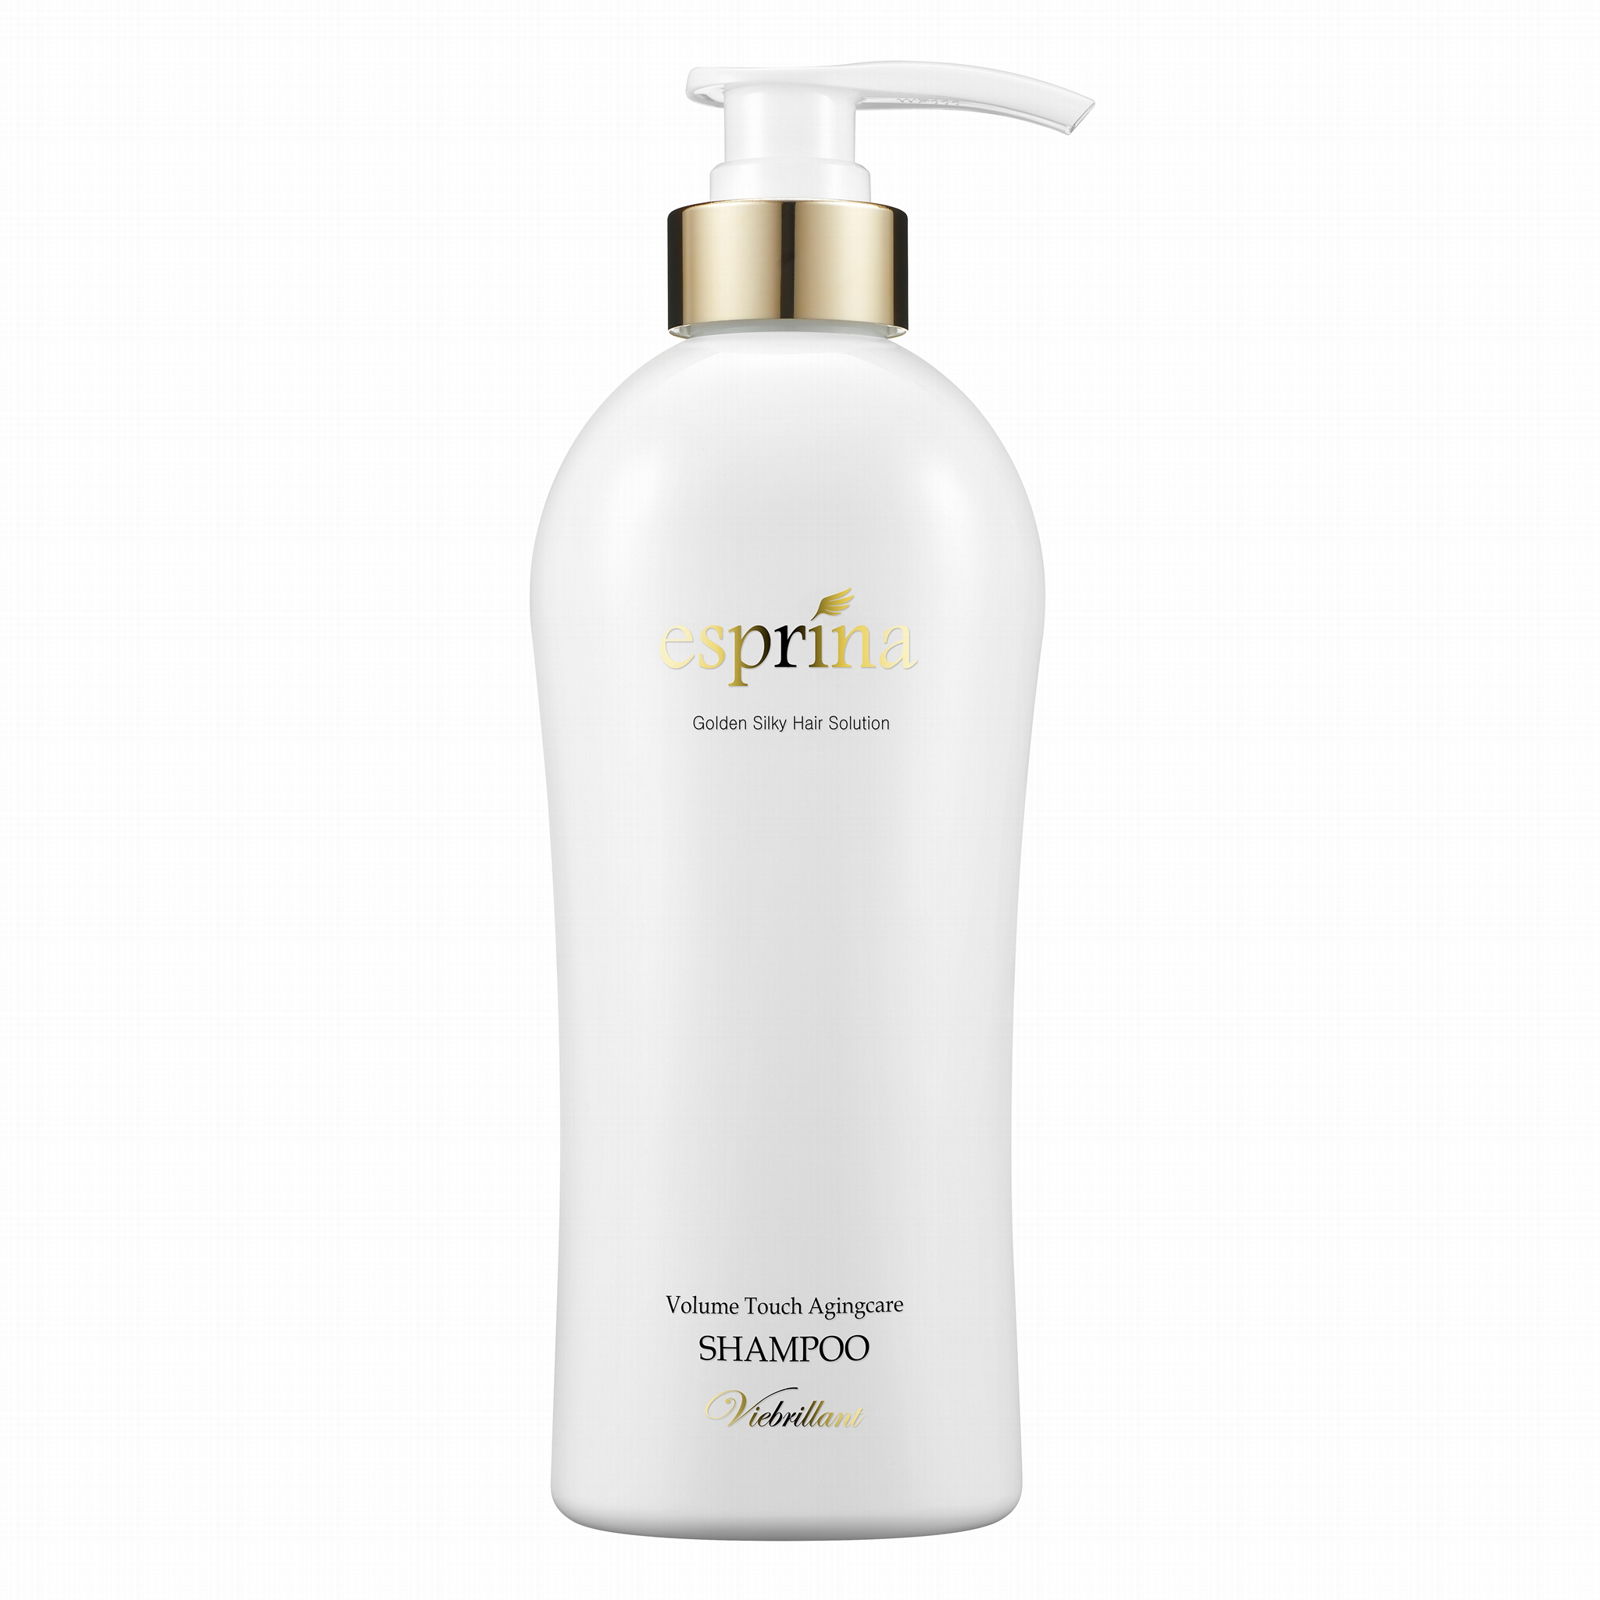 Silicon Free Viebrillant Volume Touch Agingcare Shampoo 500ml